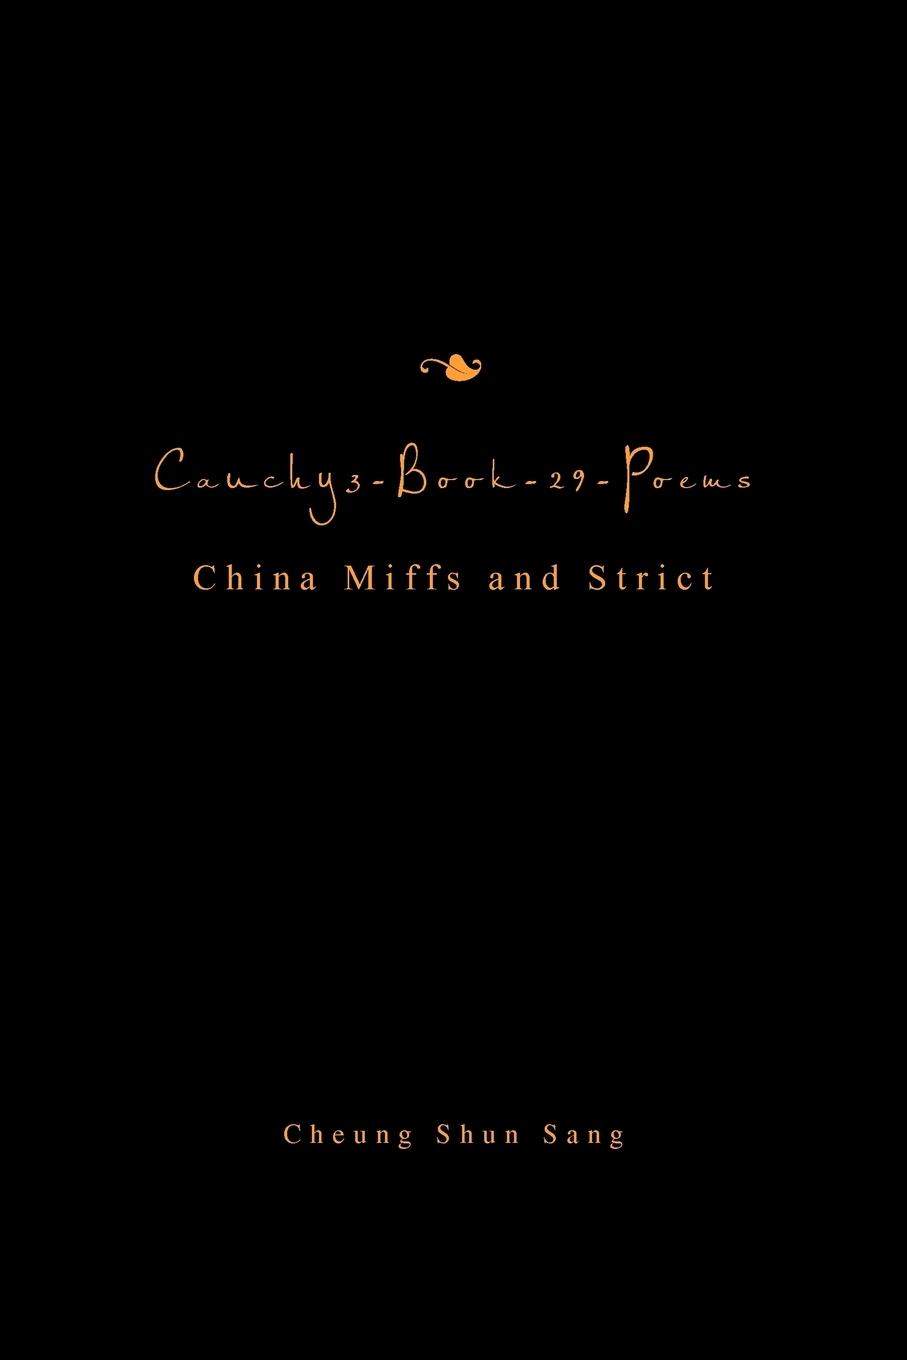 Cauchy3-Book-29-Poems - Sang, Cheung Shun